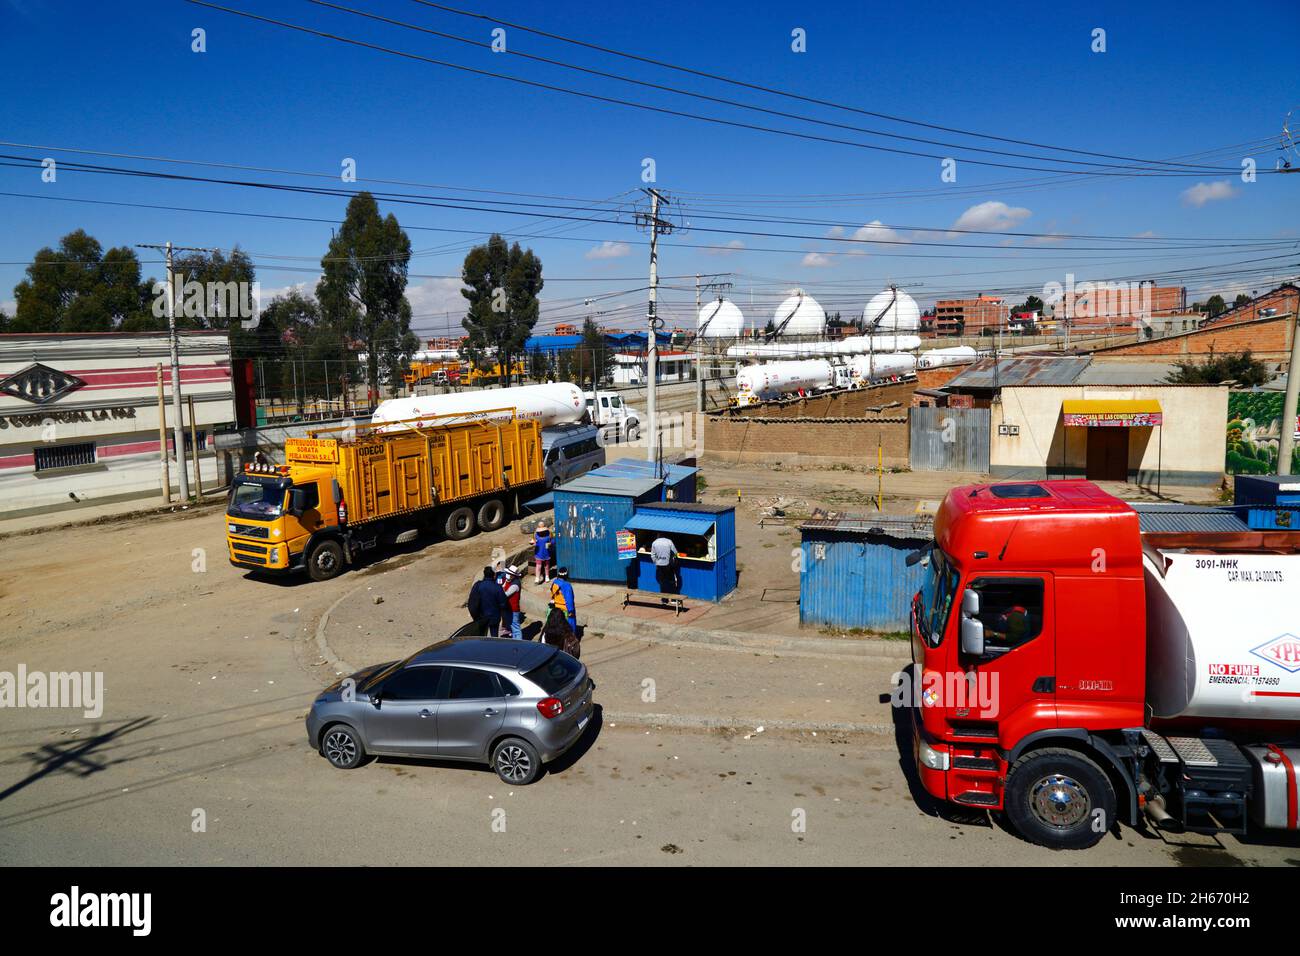 Senkata, El Alto, Bolivia. 13 novembre 2021. Autocarri con serbatoio di gas naturale liquido e un autocarro domestico per la fornitura di gas in bottiglia (giallo) all'esterno dell'impianto di carburante Senkata, in Av 6 de Marzo / Camino Oruro a El Alto. Yacimientos Petrolíferos Fiscales Bolivianos (YPFB, società petrolifera e di gas di proprietà statale della Bolivia) ha una grande raffineria e un grande impianto di stoccaggio, Che fornisce la Paz, El Alto e la zona circostante con benzina, diesel e gas naturale liquido (in bottiglie per uso domestico e anche per veicoli e altre industrie). Sullo sfondo sono alcuni dei serbatoi di stoccaggio di gas sferici. Foto Stock